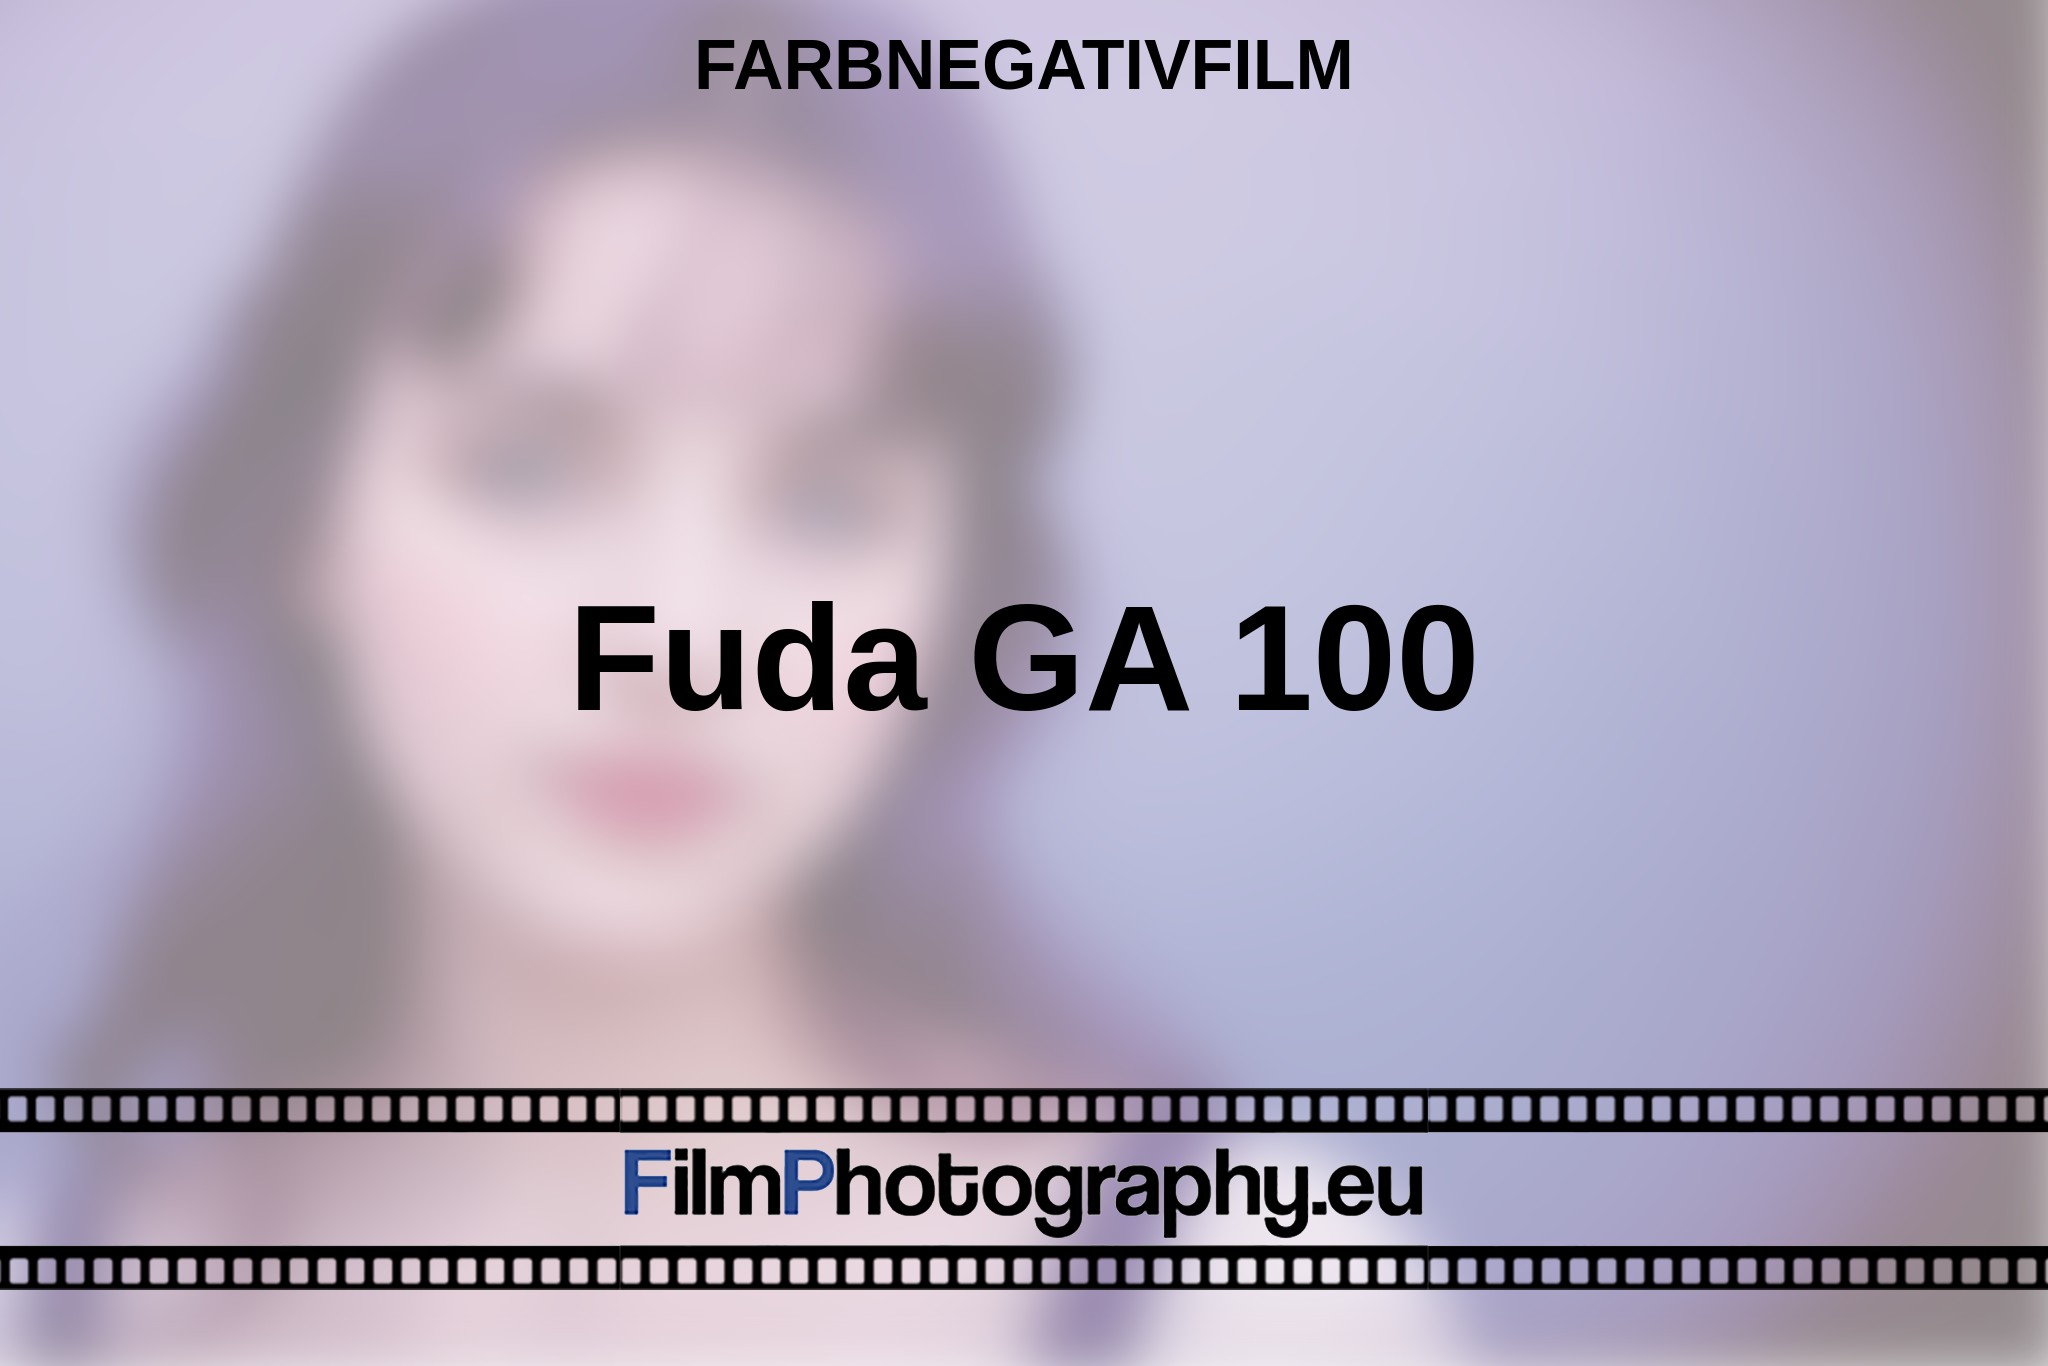 fuda-ga-100-farbnegativfilm-bnv.jpg